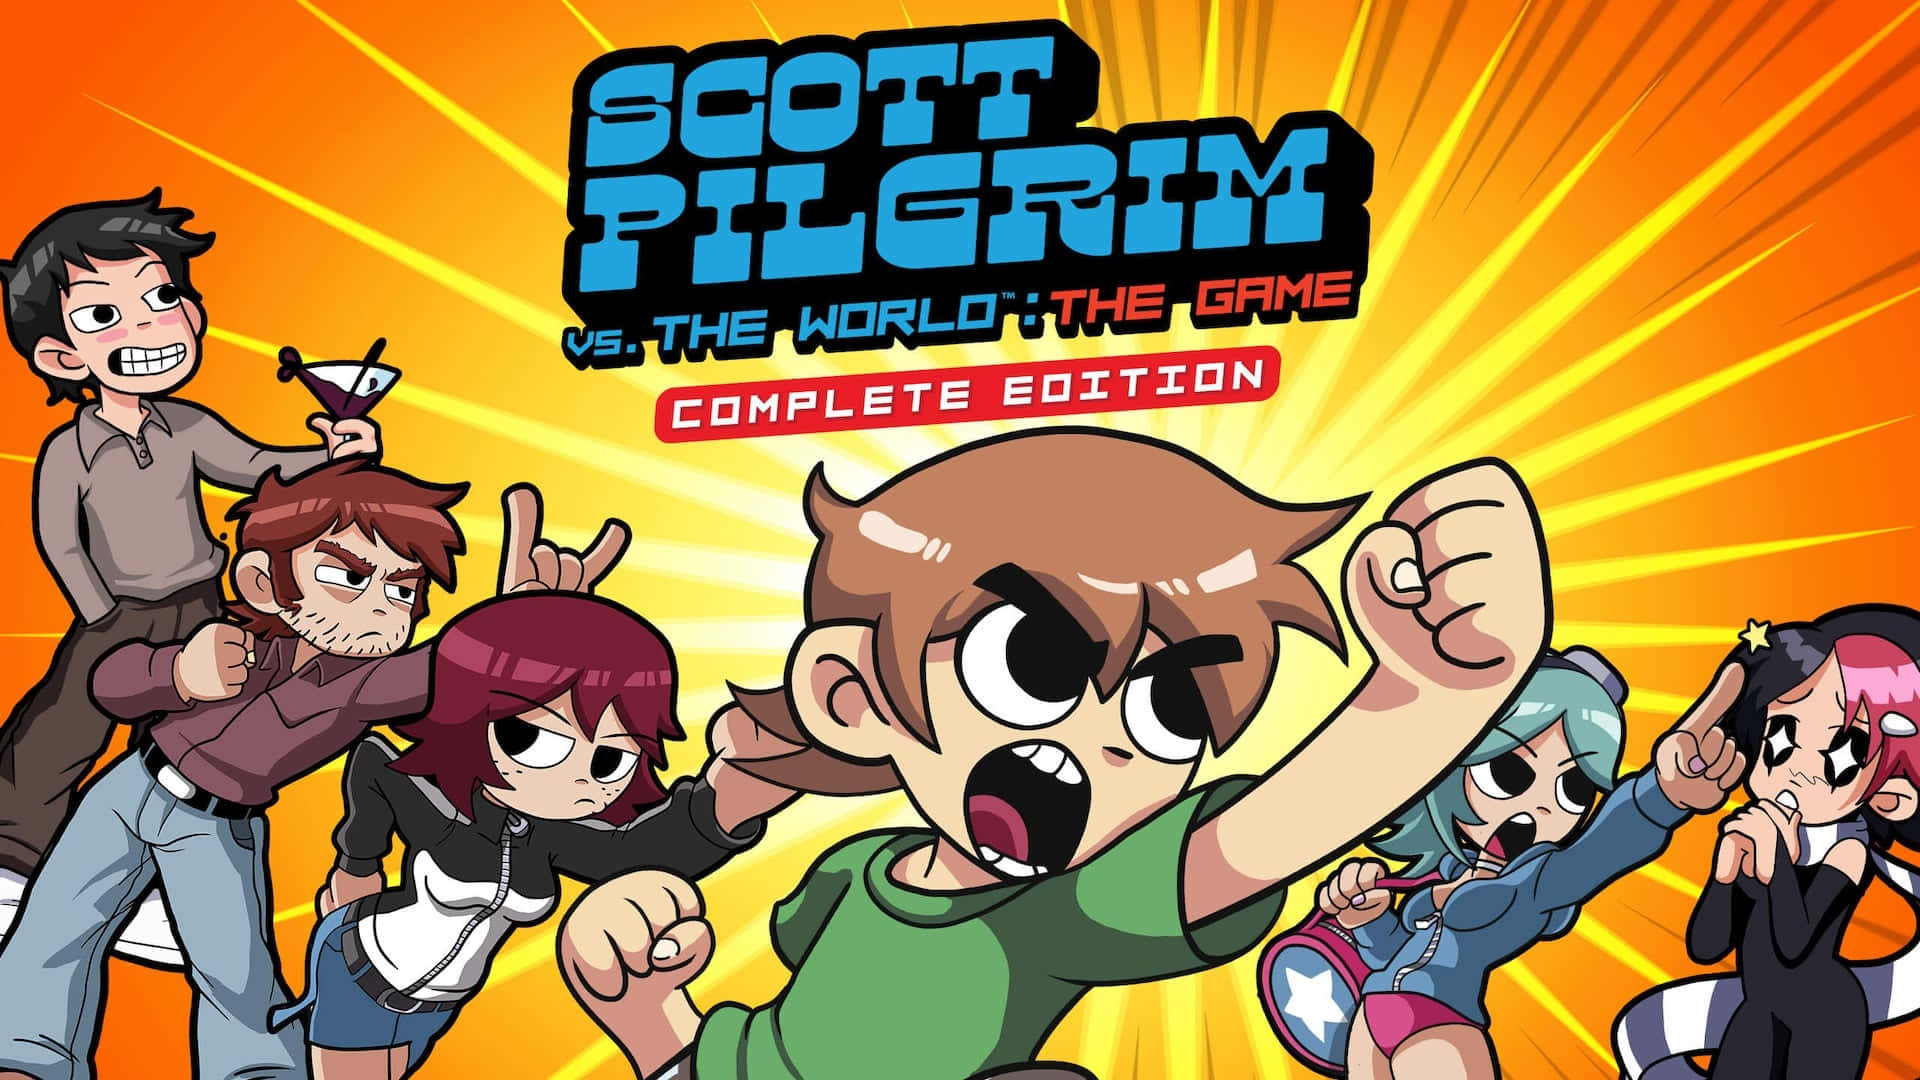 Scott Pilgrim Game Complete Edition Artwork